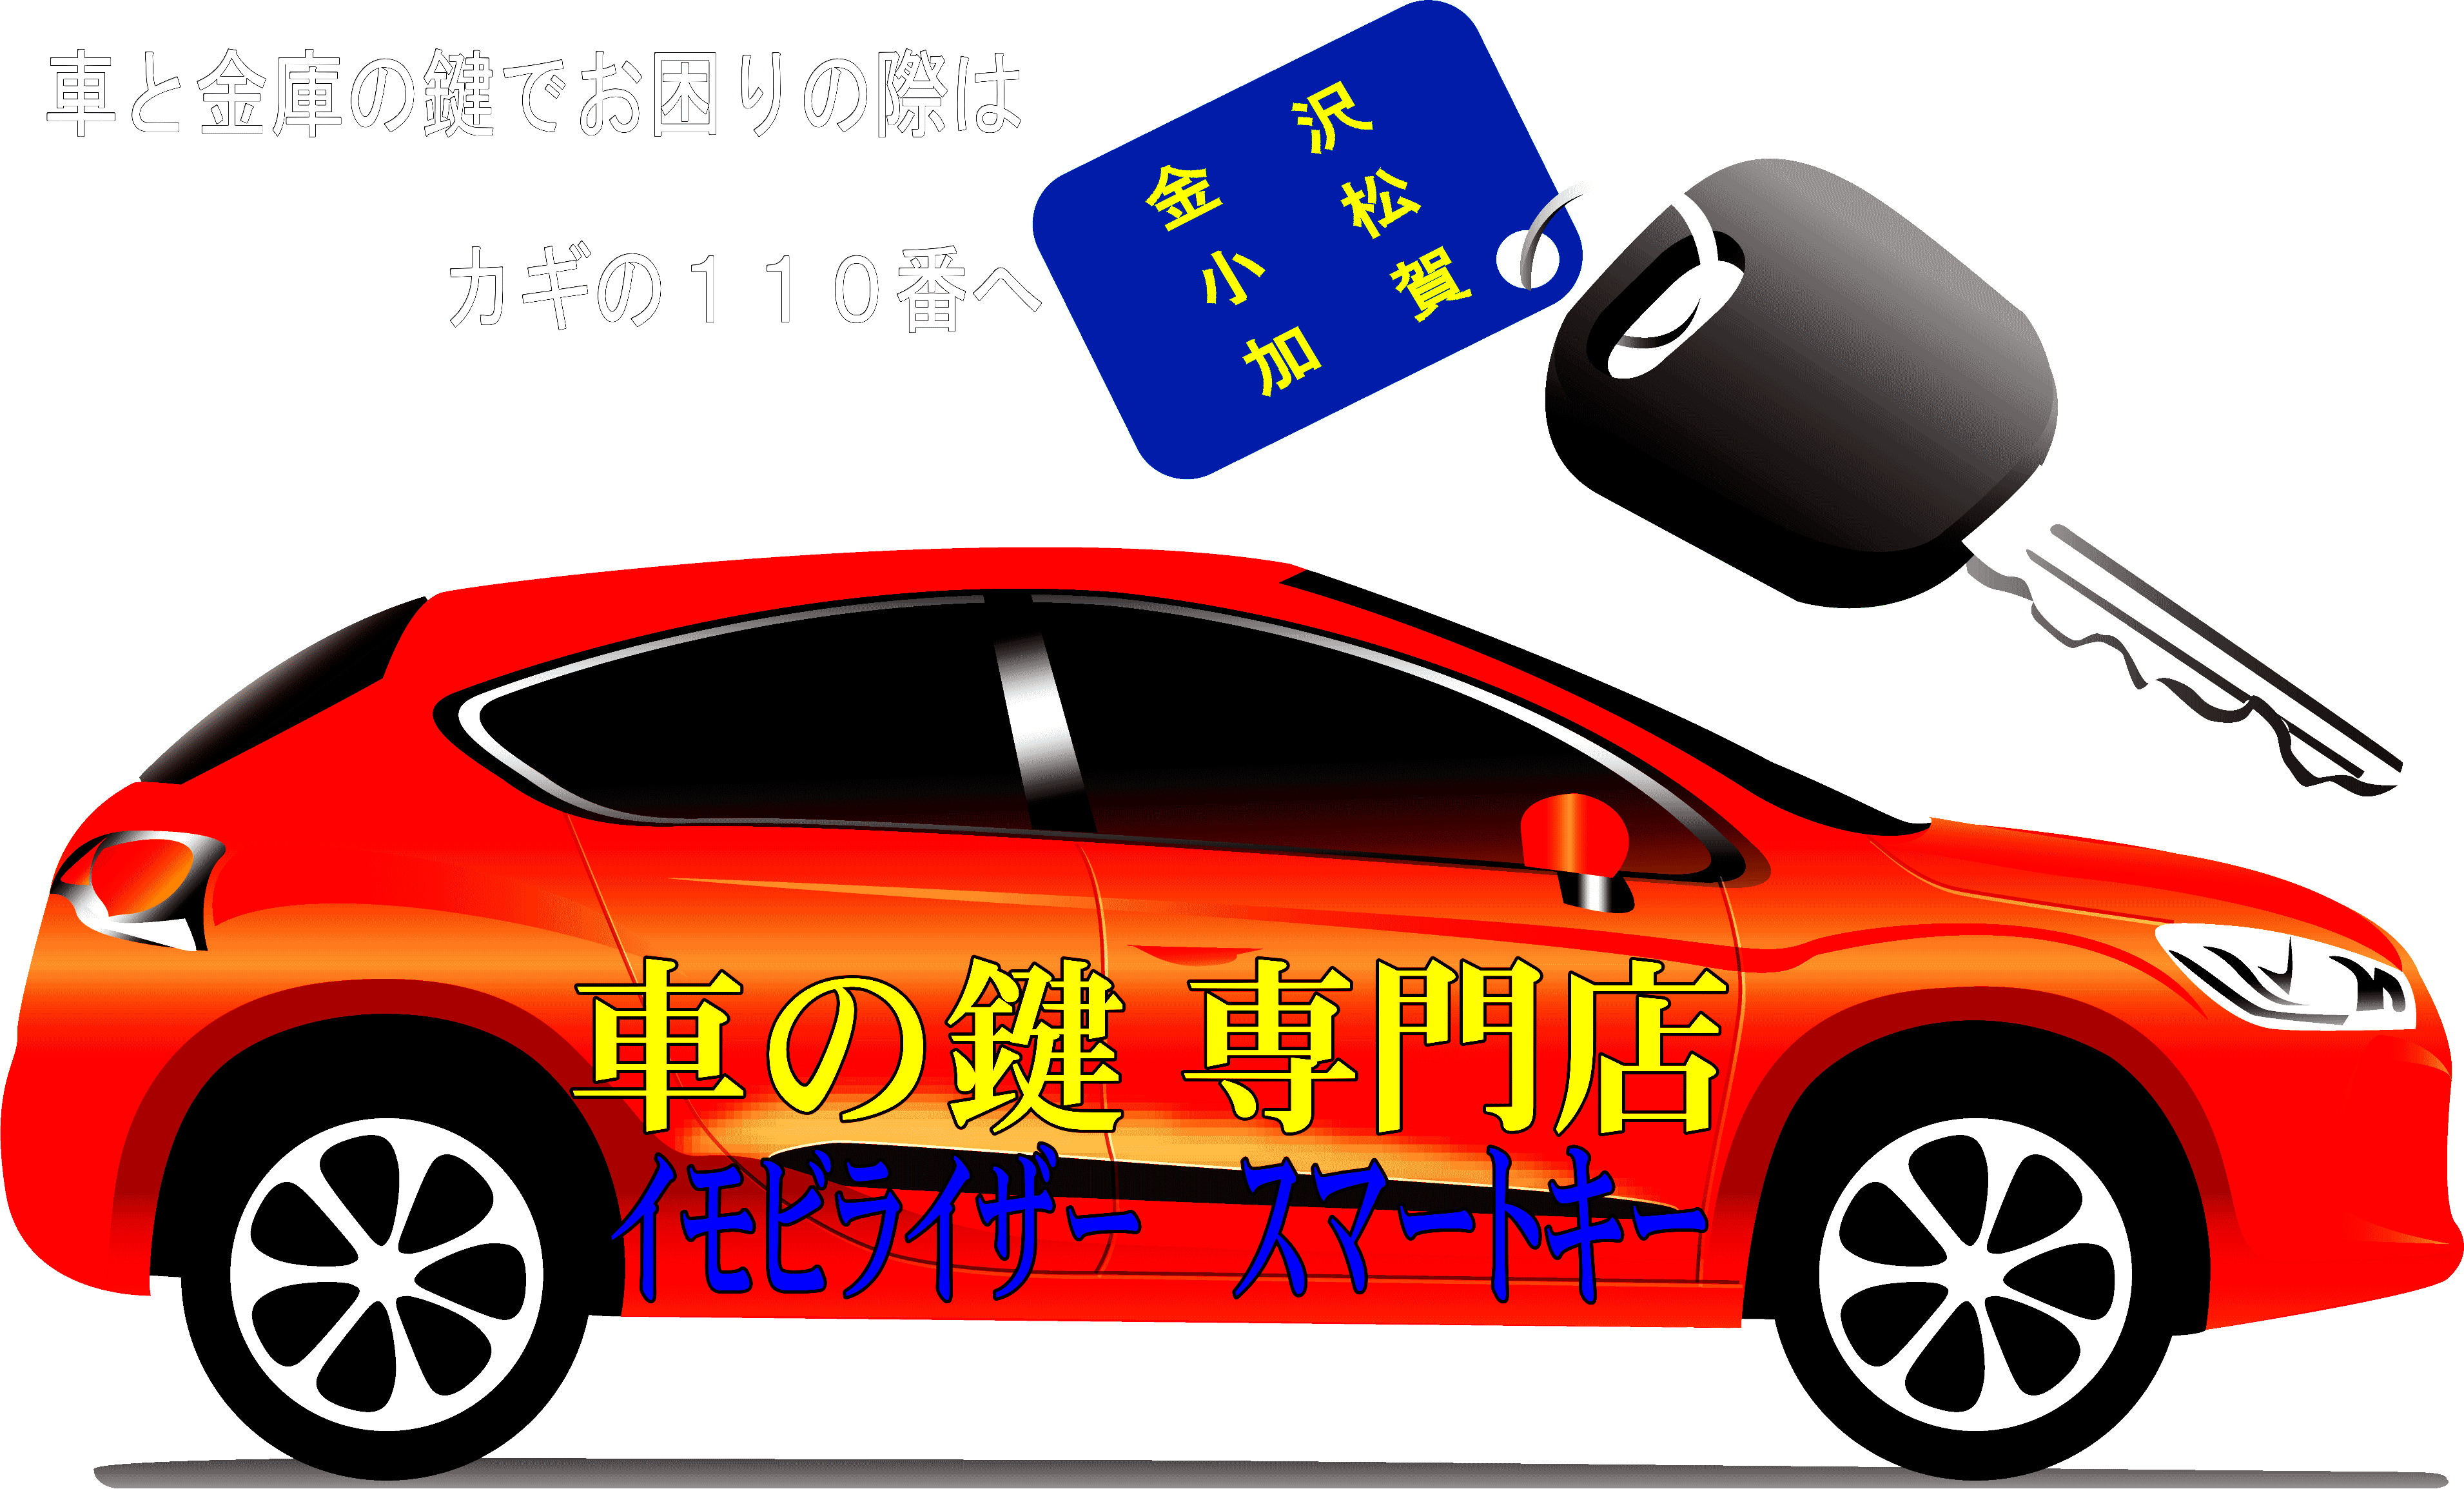 石川車鍵屋金沢・小松・加賀、車の鍵専門・イモビライザー・スマートキー